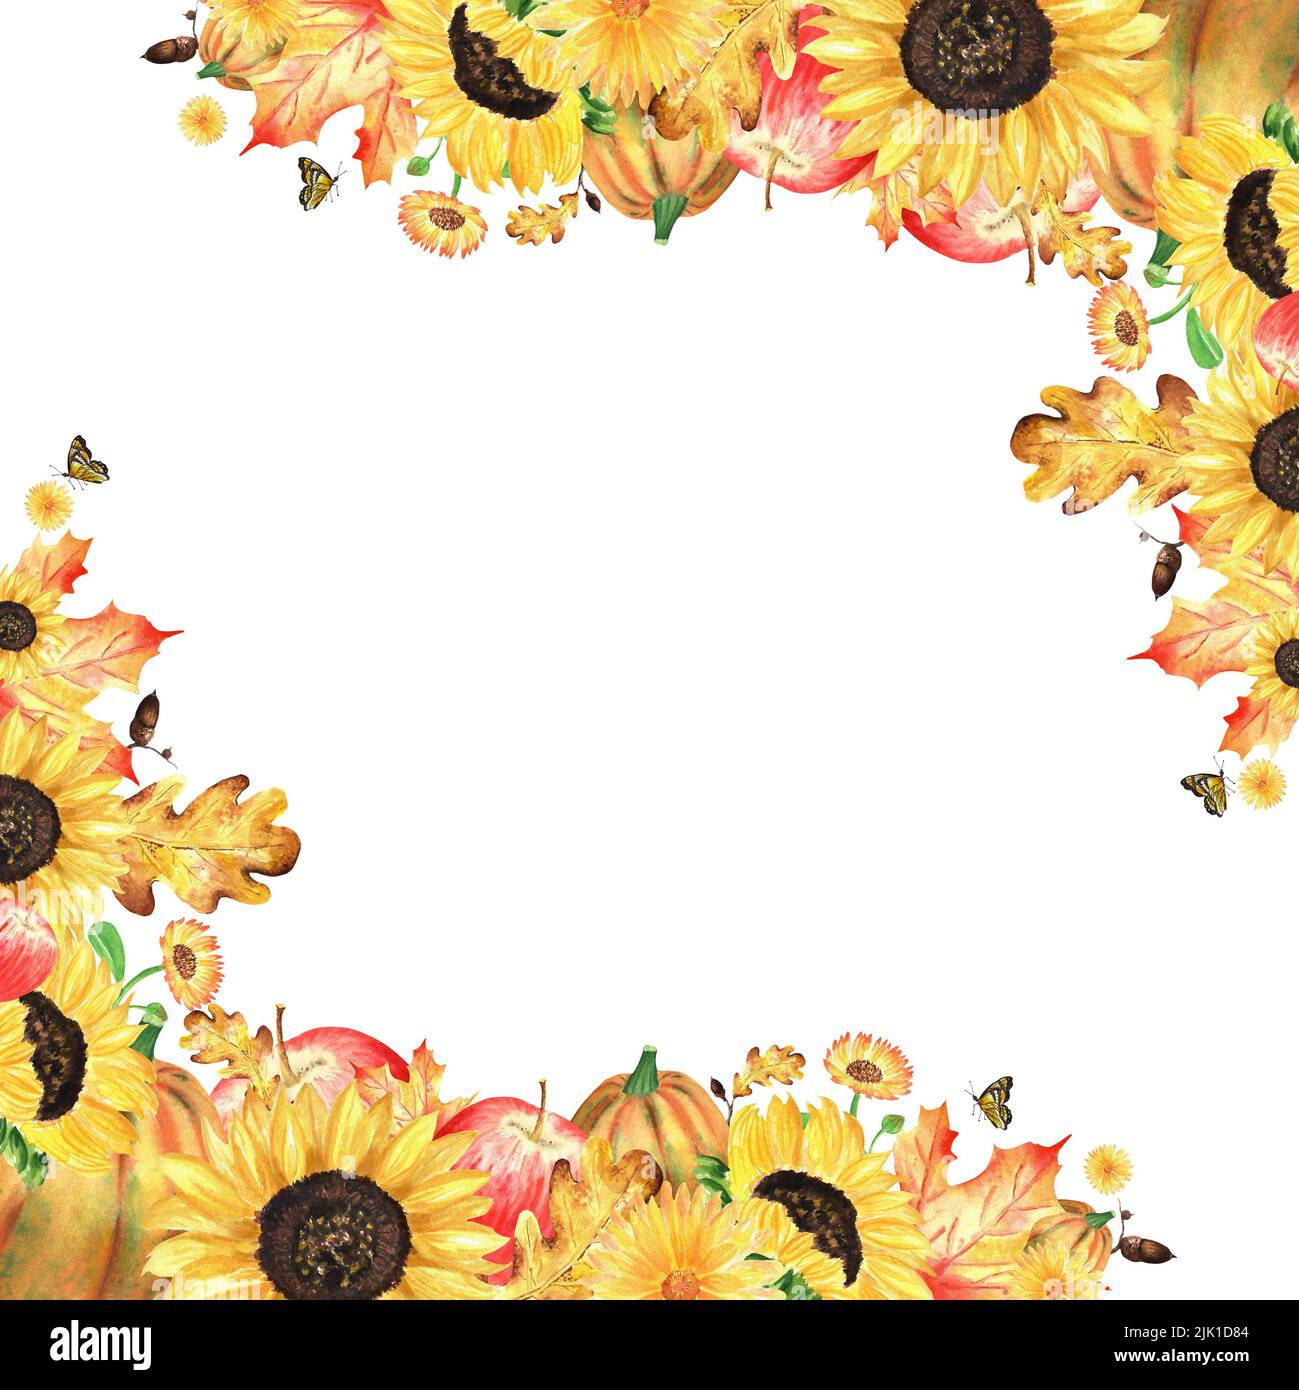 Ein Herbstgarten Komposition. Aquarell-Illustrationen zum Thema Herbsternte. Garteneckrahmen mit Sonnenblumen, Ahorn- und Eichenblättern, Stockfoto